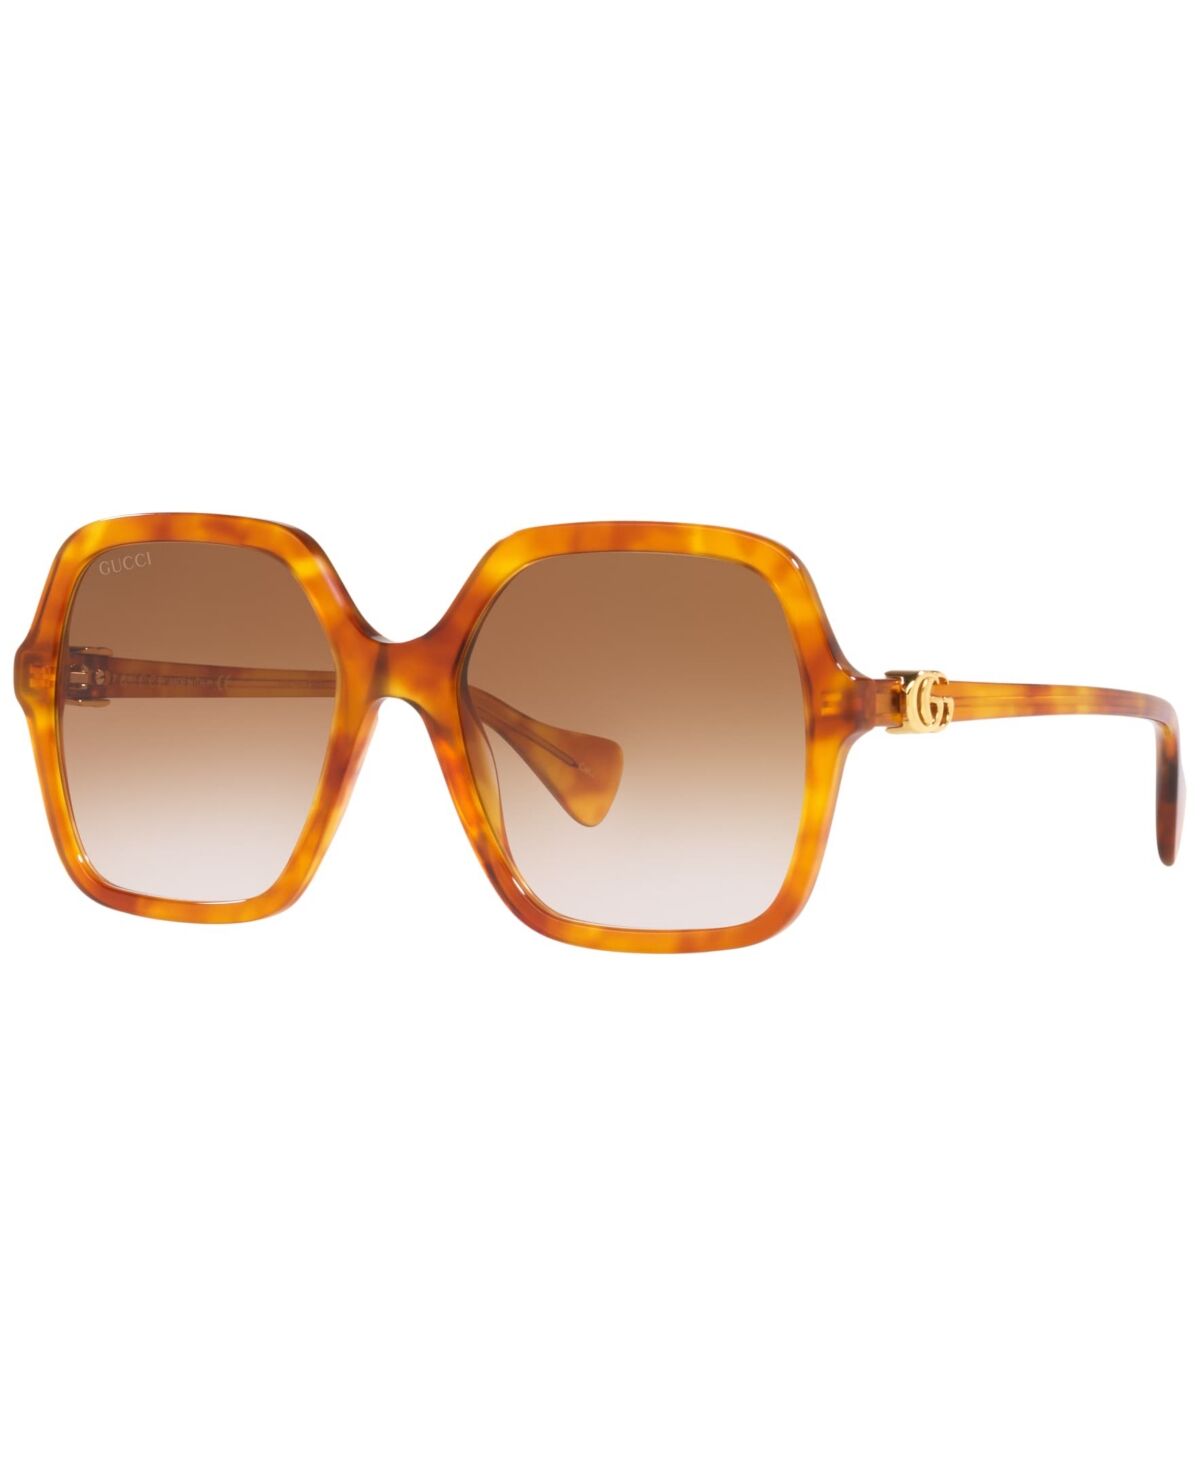 Gucci Women's Sunglasses, GG1072S - Brown, Black